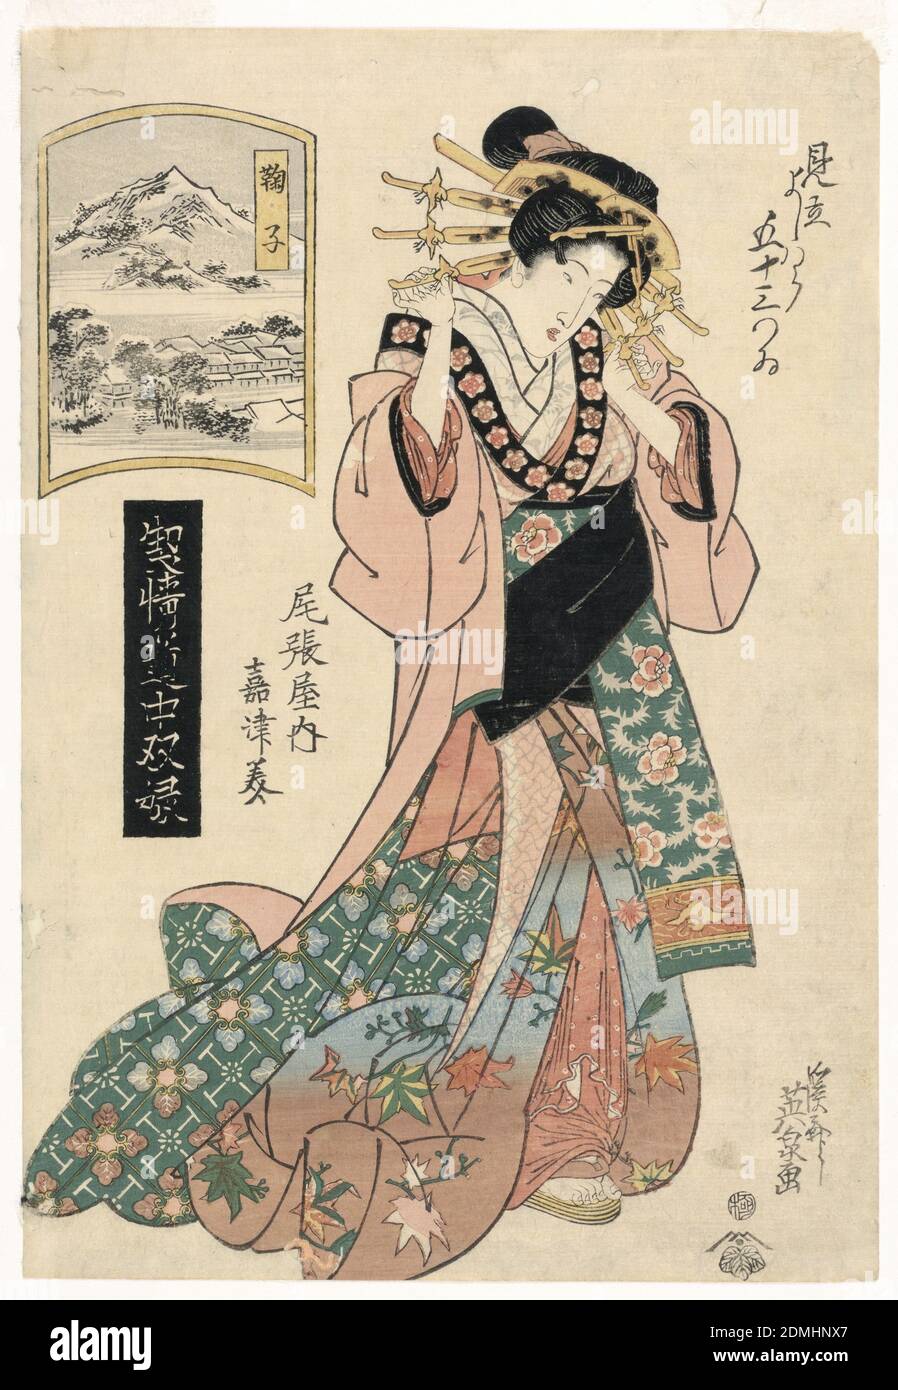 Mariko, della serie, 'The Highest Ranking Geisha's Journey', Keisei Eisen, giapponese, 1790 – 1848, stampa a blocchi di legno in inchiostro colorato su carta, coperto da testa a punta è questa donna ben vestito di fronte allo spettatore, ma guardando verso il basso con la massima sfrontezza. I pettini riempiono i capelli, che segnala il suo alto status di cortigiana. Ciascuno dei suoi strati di kimono è decorato con vari motivi floreali. Le variazioni rosa e verde evidenziano le foglie d'acero autunnale, che decorano la metà inferiore del suo indumento. Sopra di lei è una finestra in una fredda scena invernale. La città e le cime di montagna sono coperte di neve Foto Stock